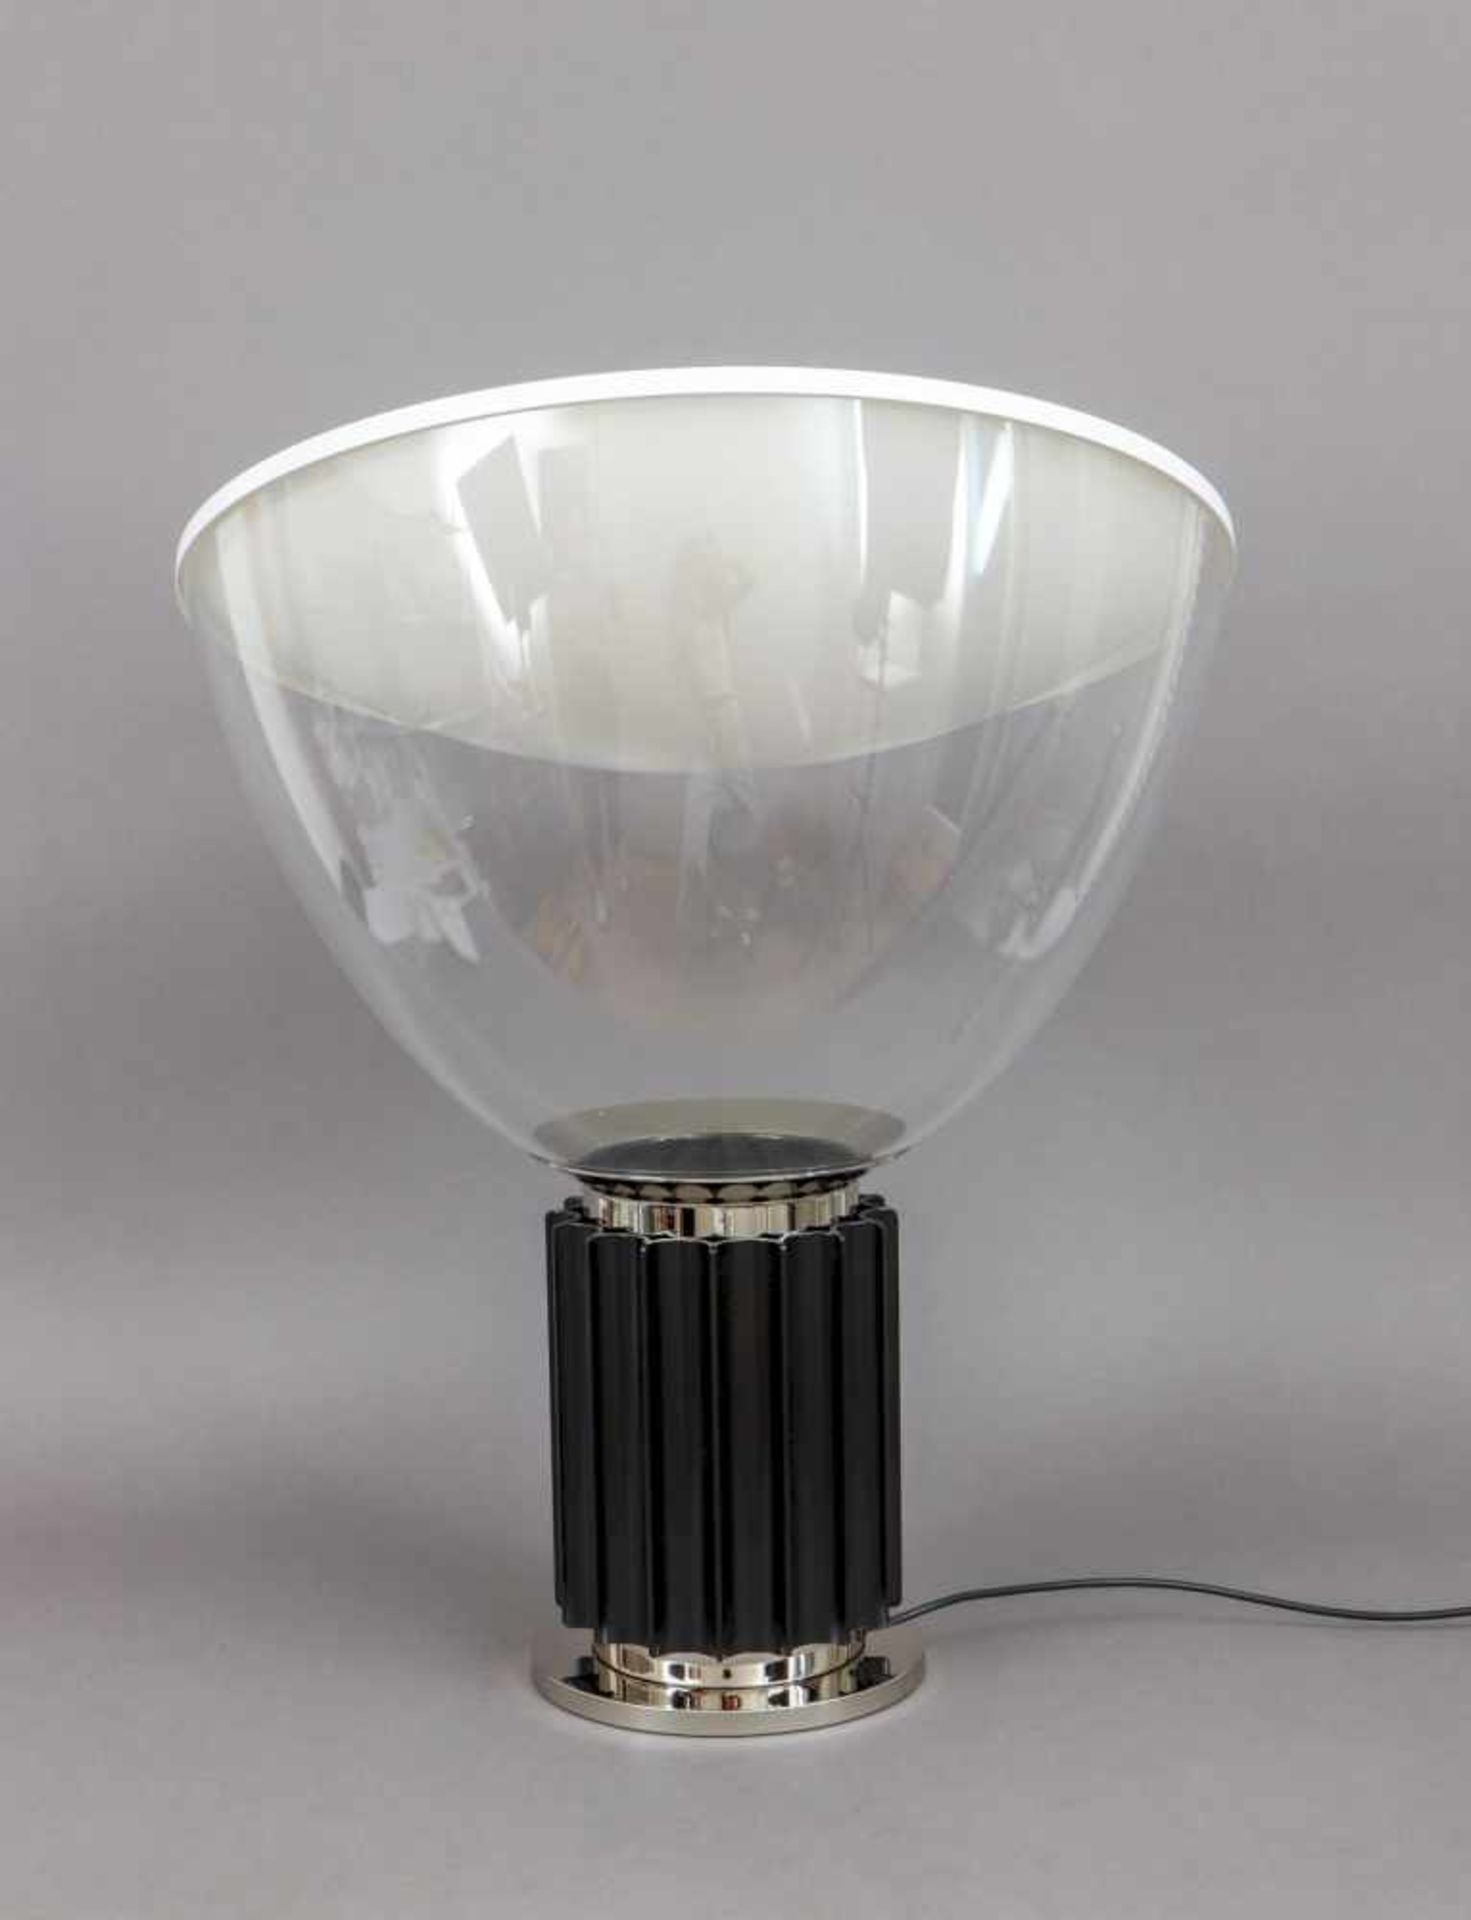 FLOS TACCIA Tischlampe ¨small¨ (Entwurf ACHILLE CASTIGLIONI, 1962)mit LED-Leuchtkörper, schwarz - Bild 2 aus 4